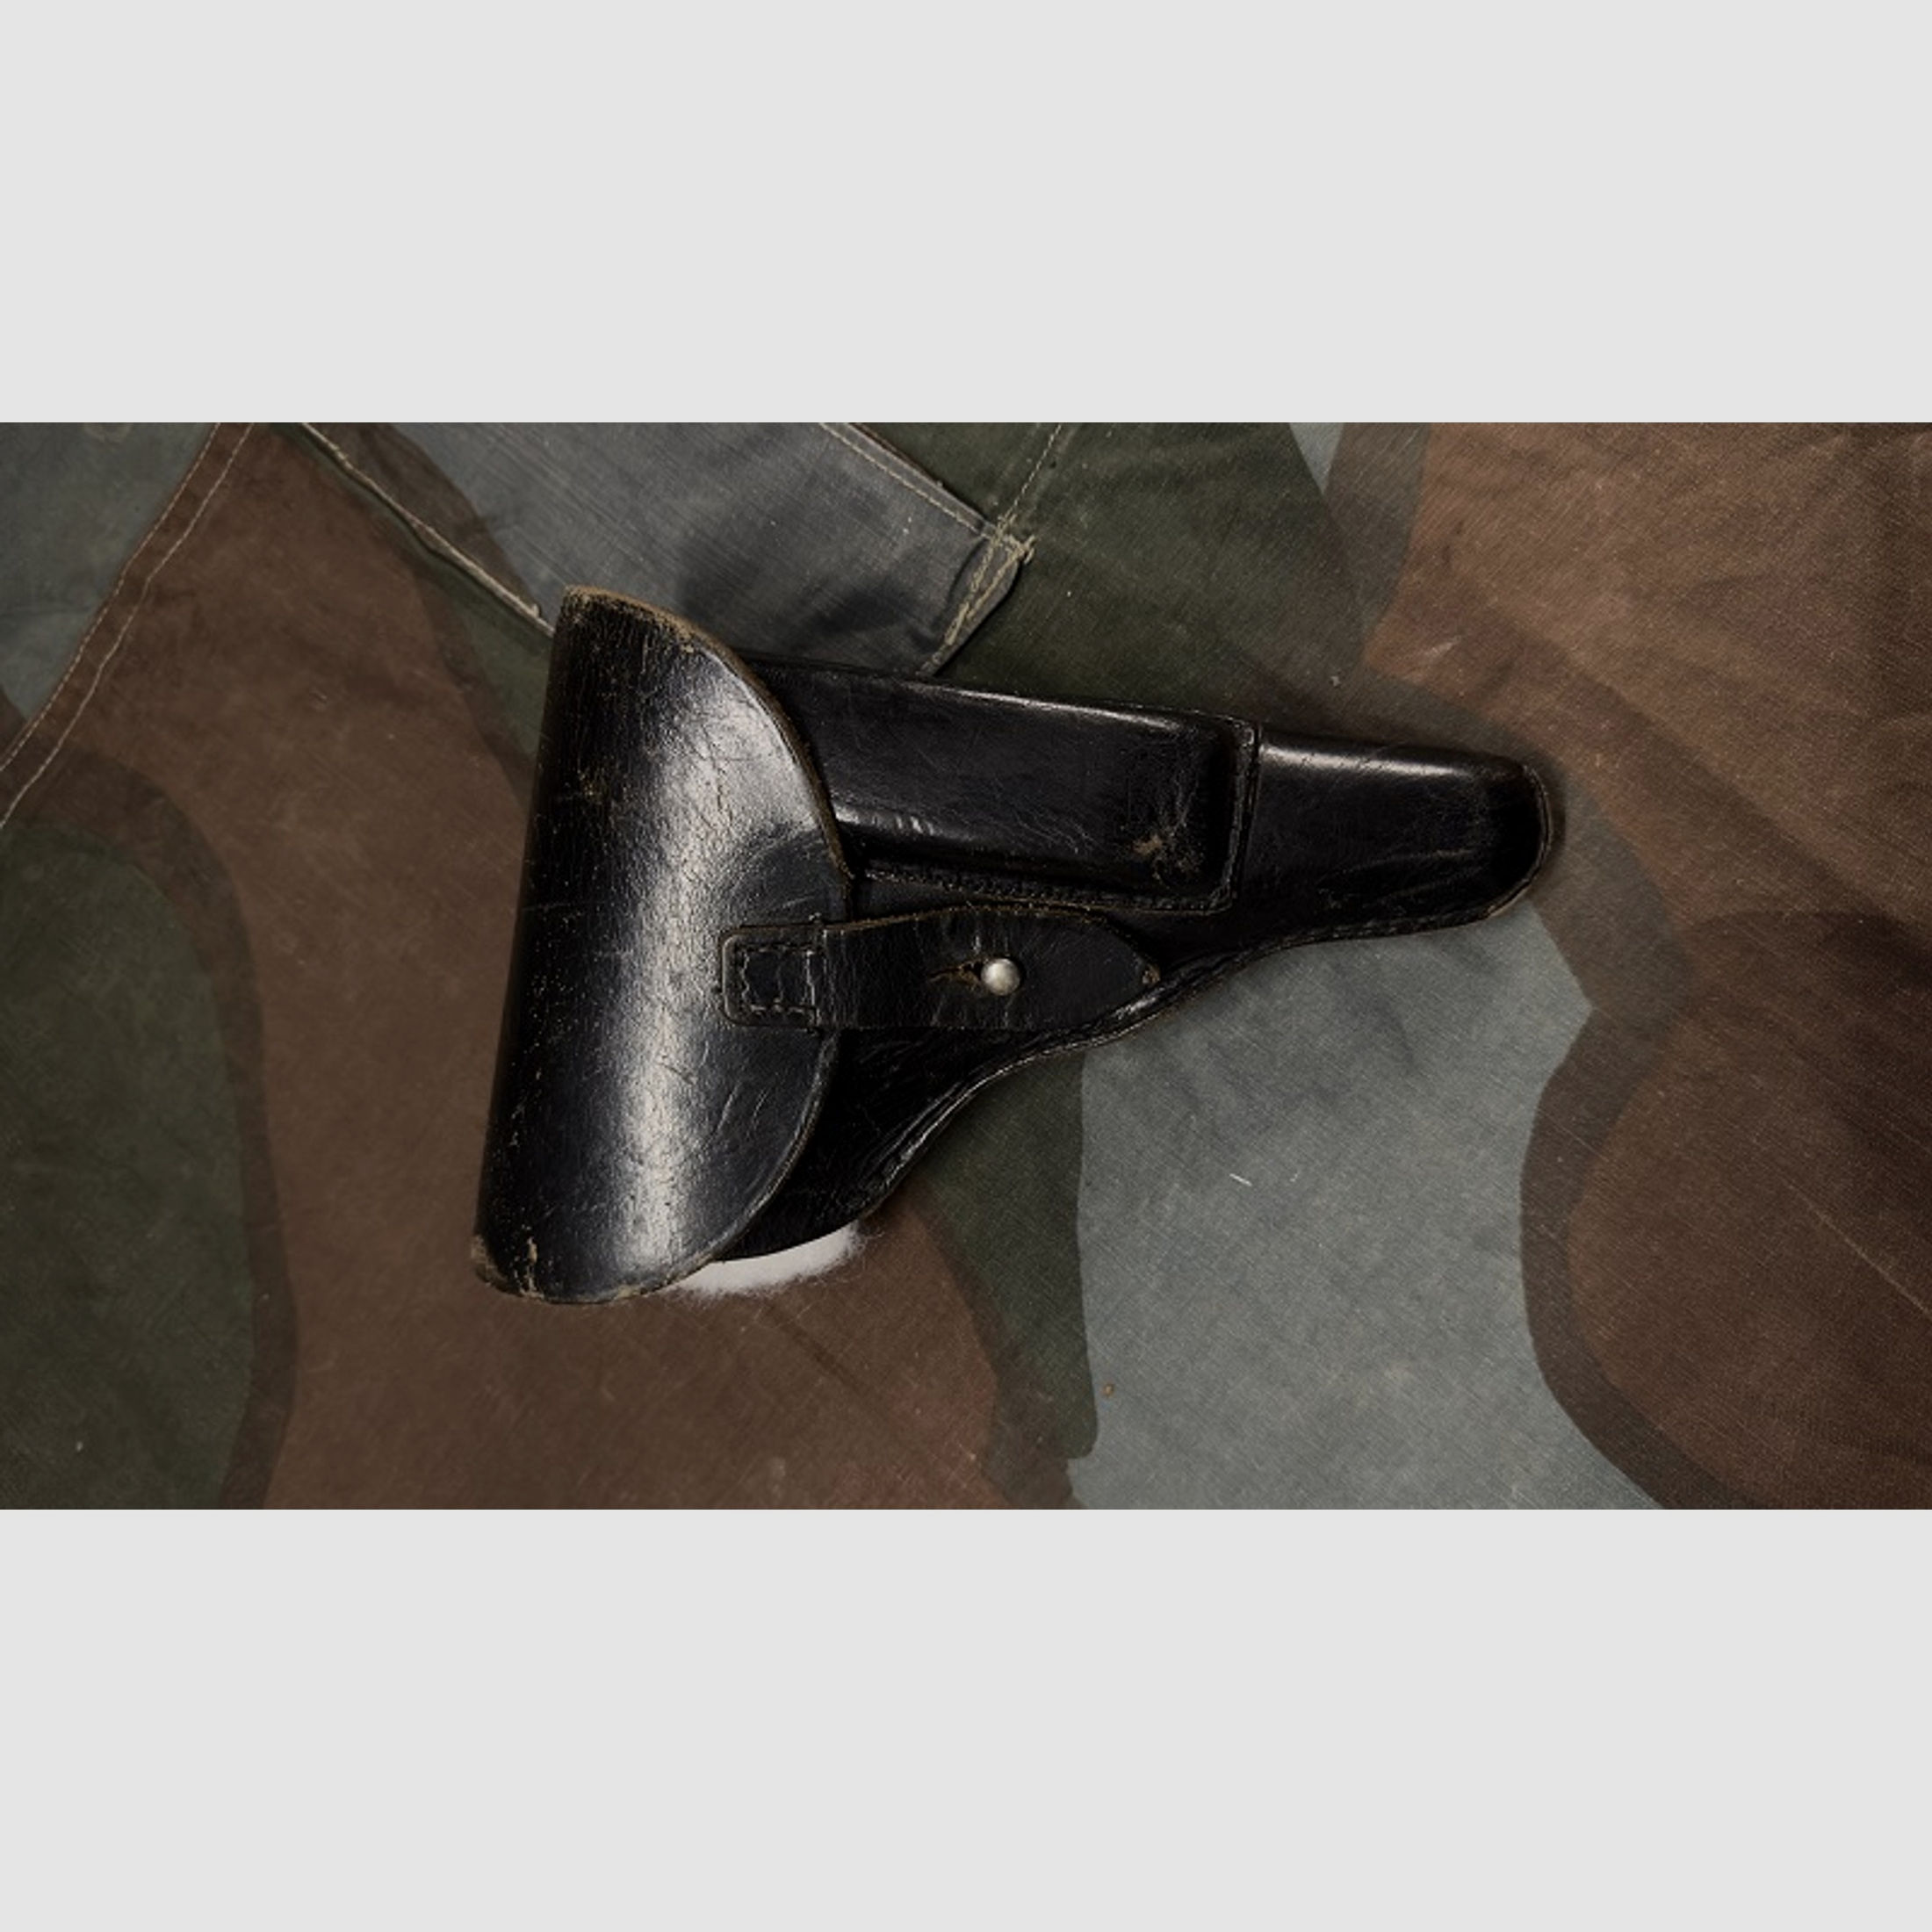 Originale Pistolen Tasche HK 4 Leder-Holster DDR NVA Berlin Polizei Bund No M C98 08 PPK Ari Walther